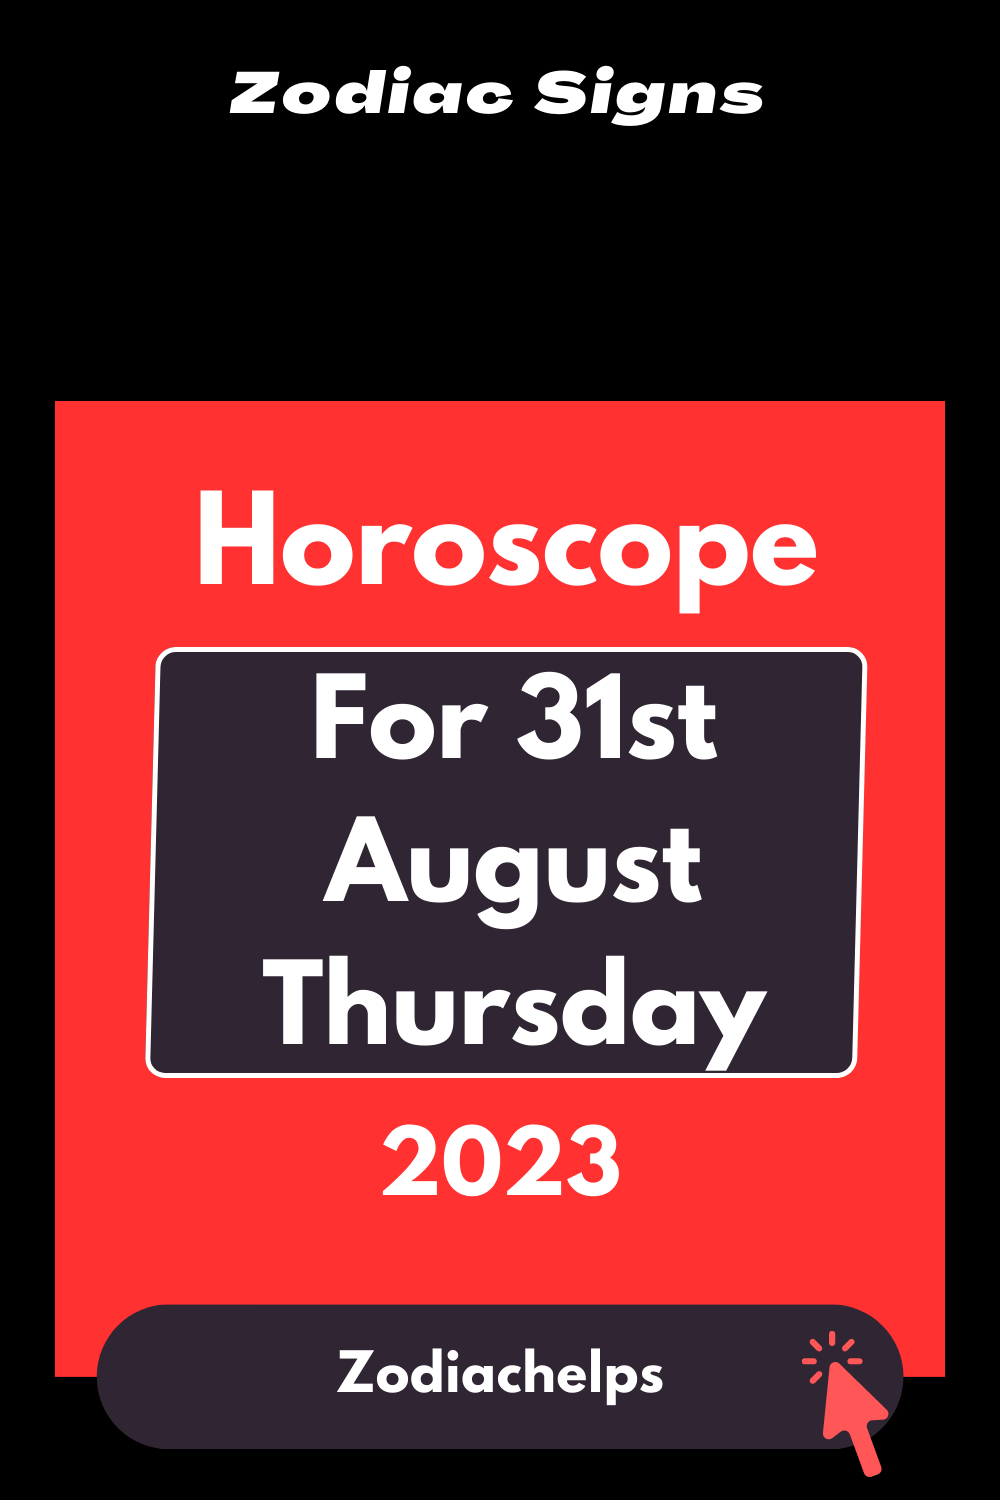 Horoscope for 31st August Thursday, 2023